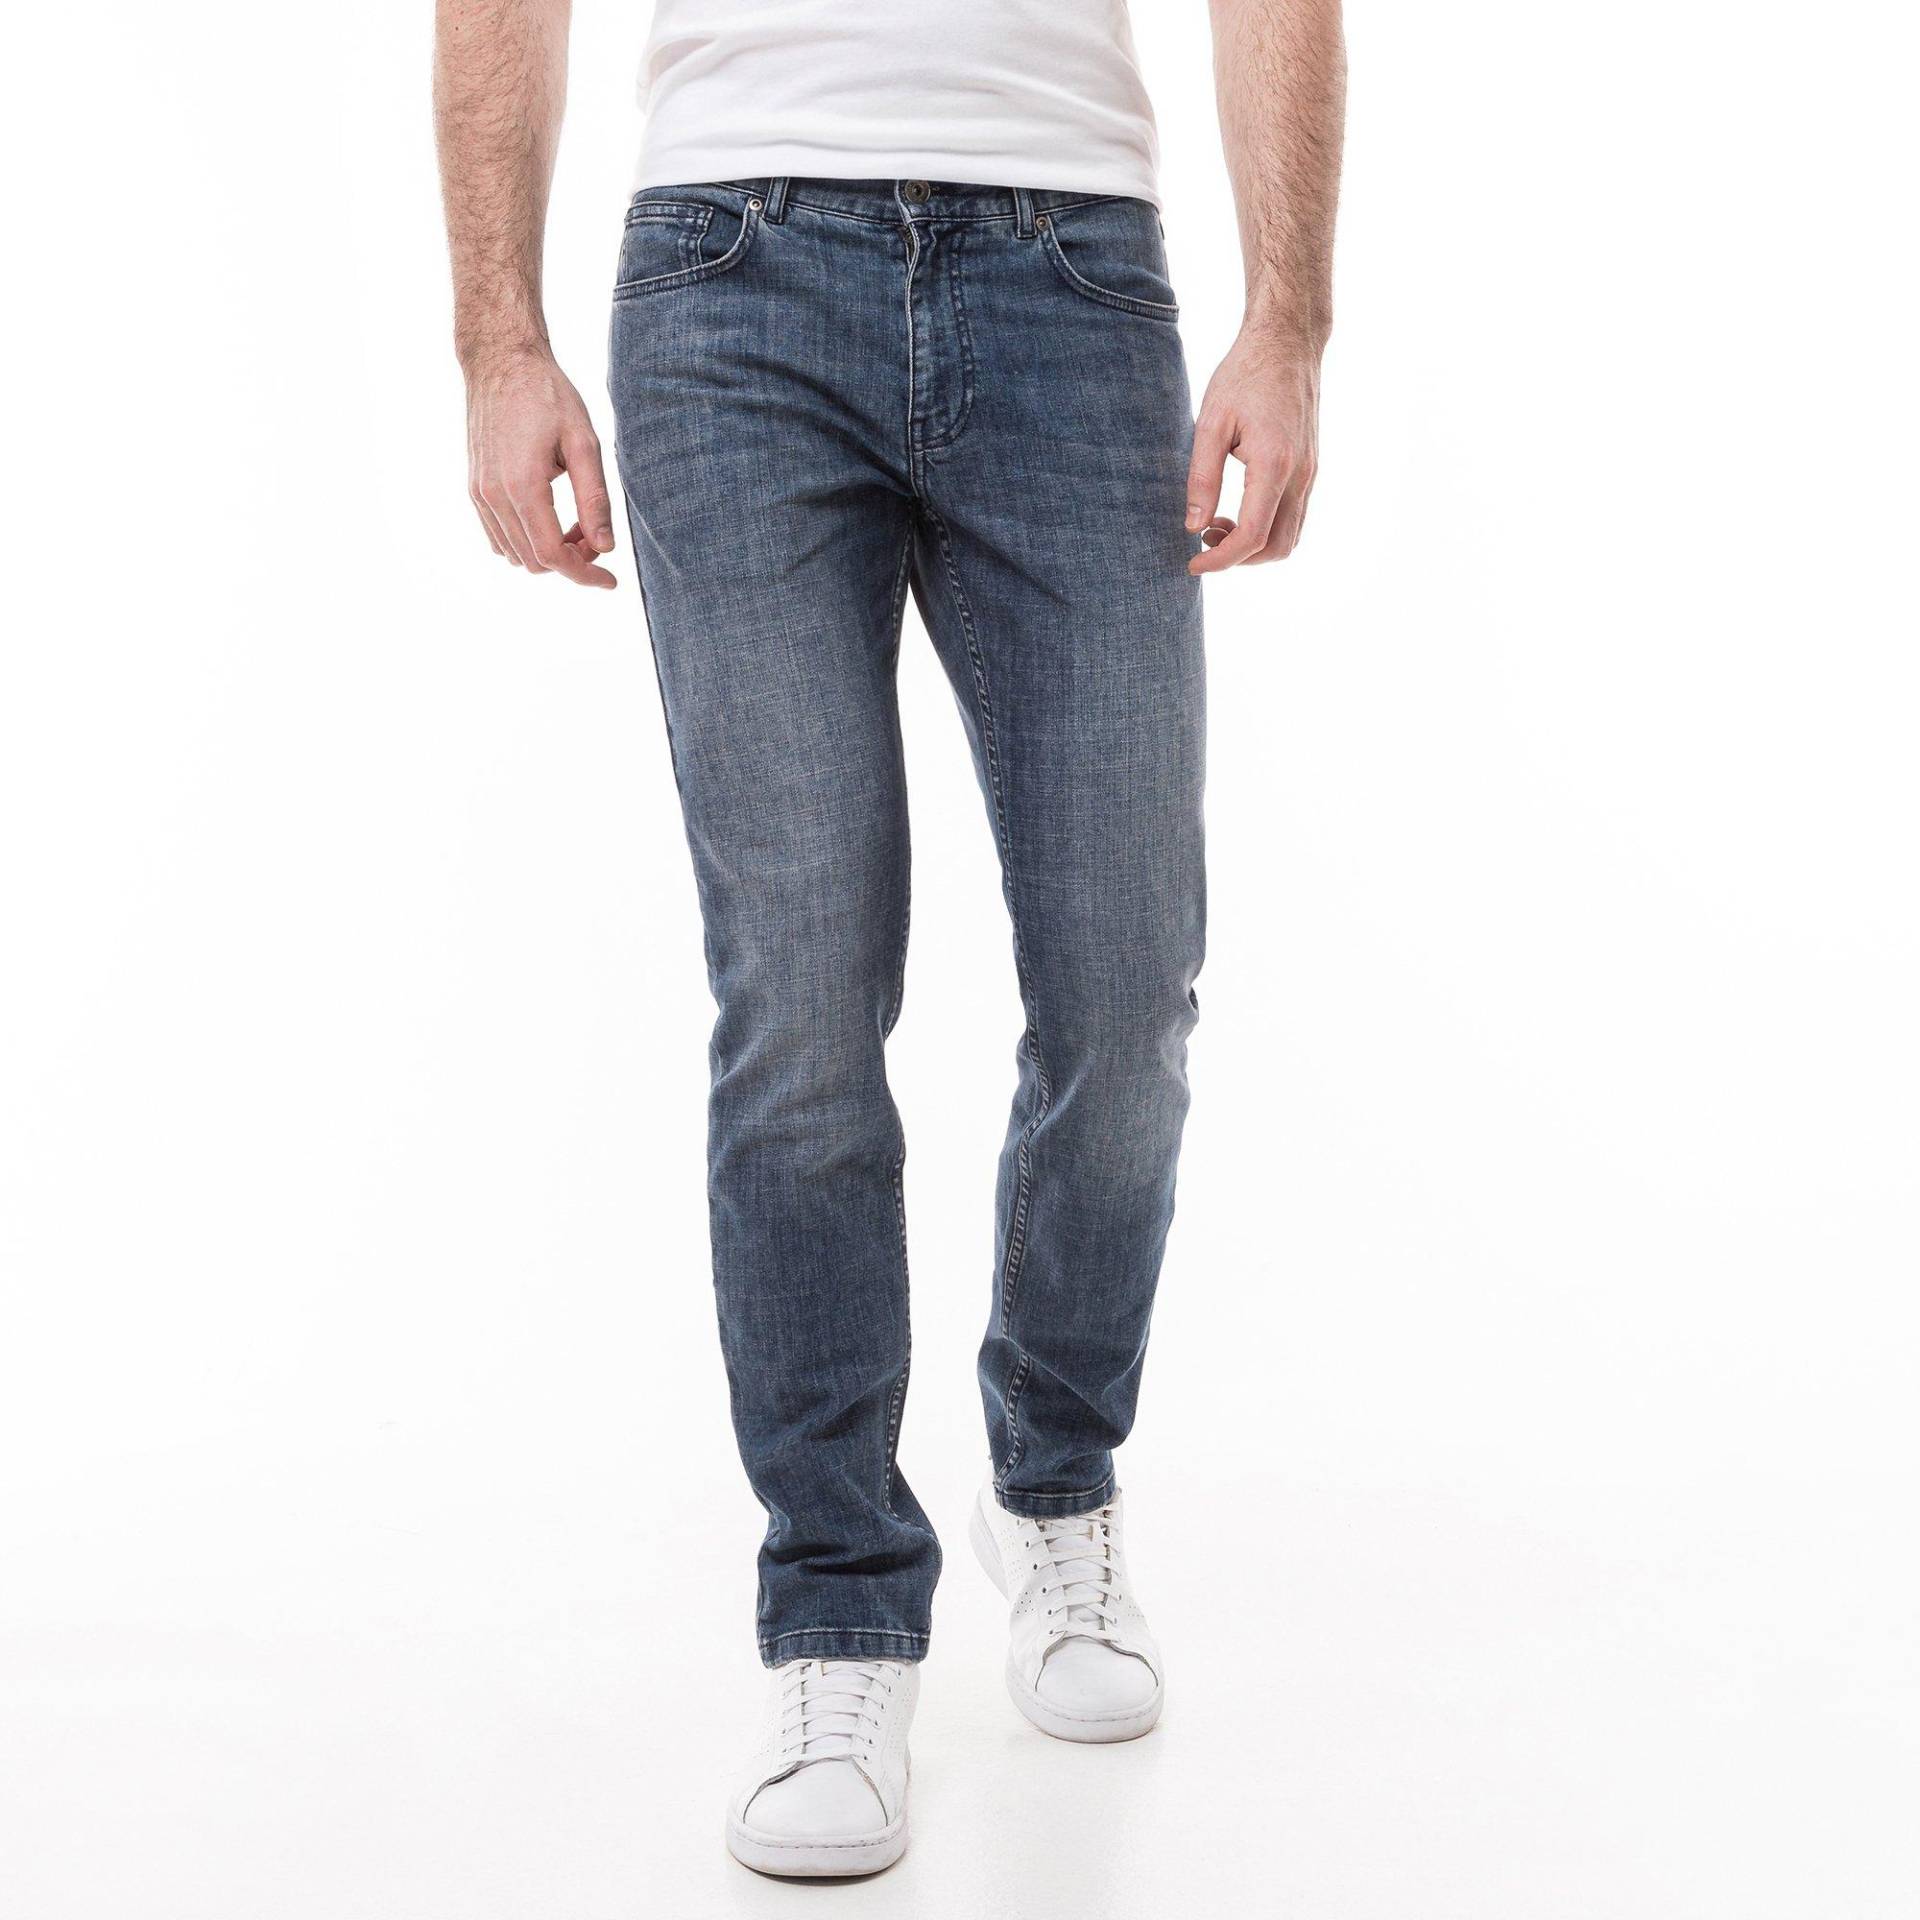 Jeans, Slim Fit Herren Blau Denim L32/W32 von Manor Man